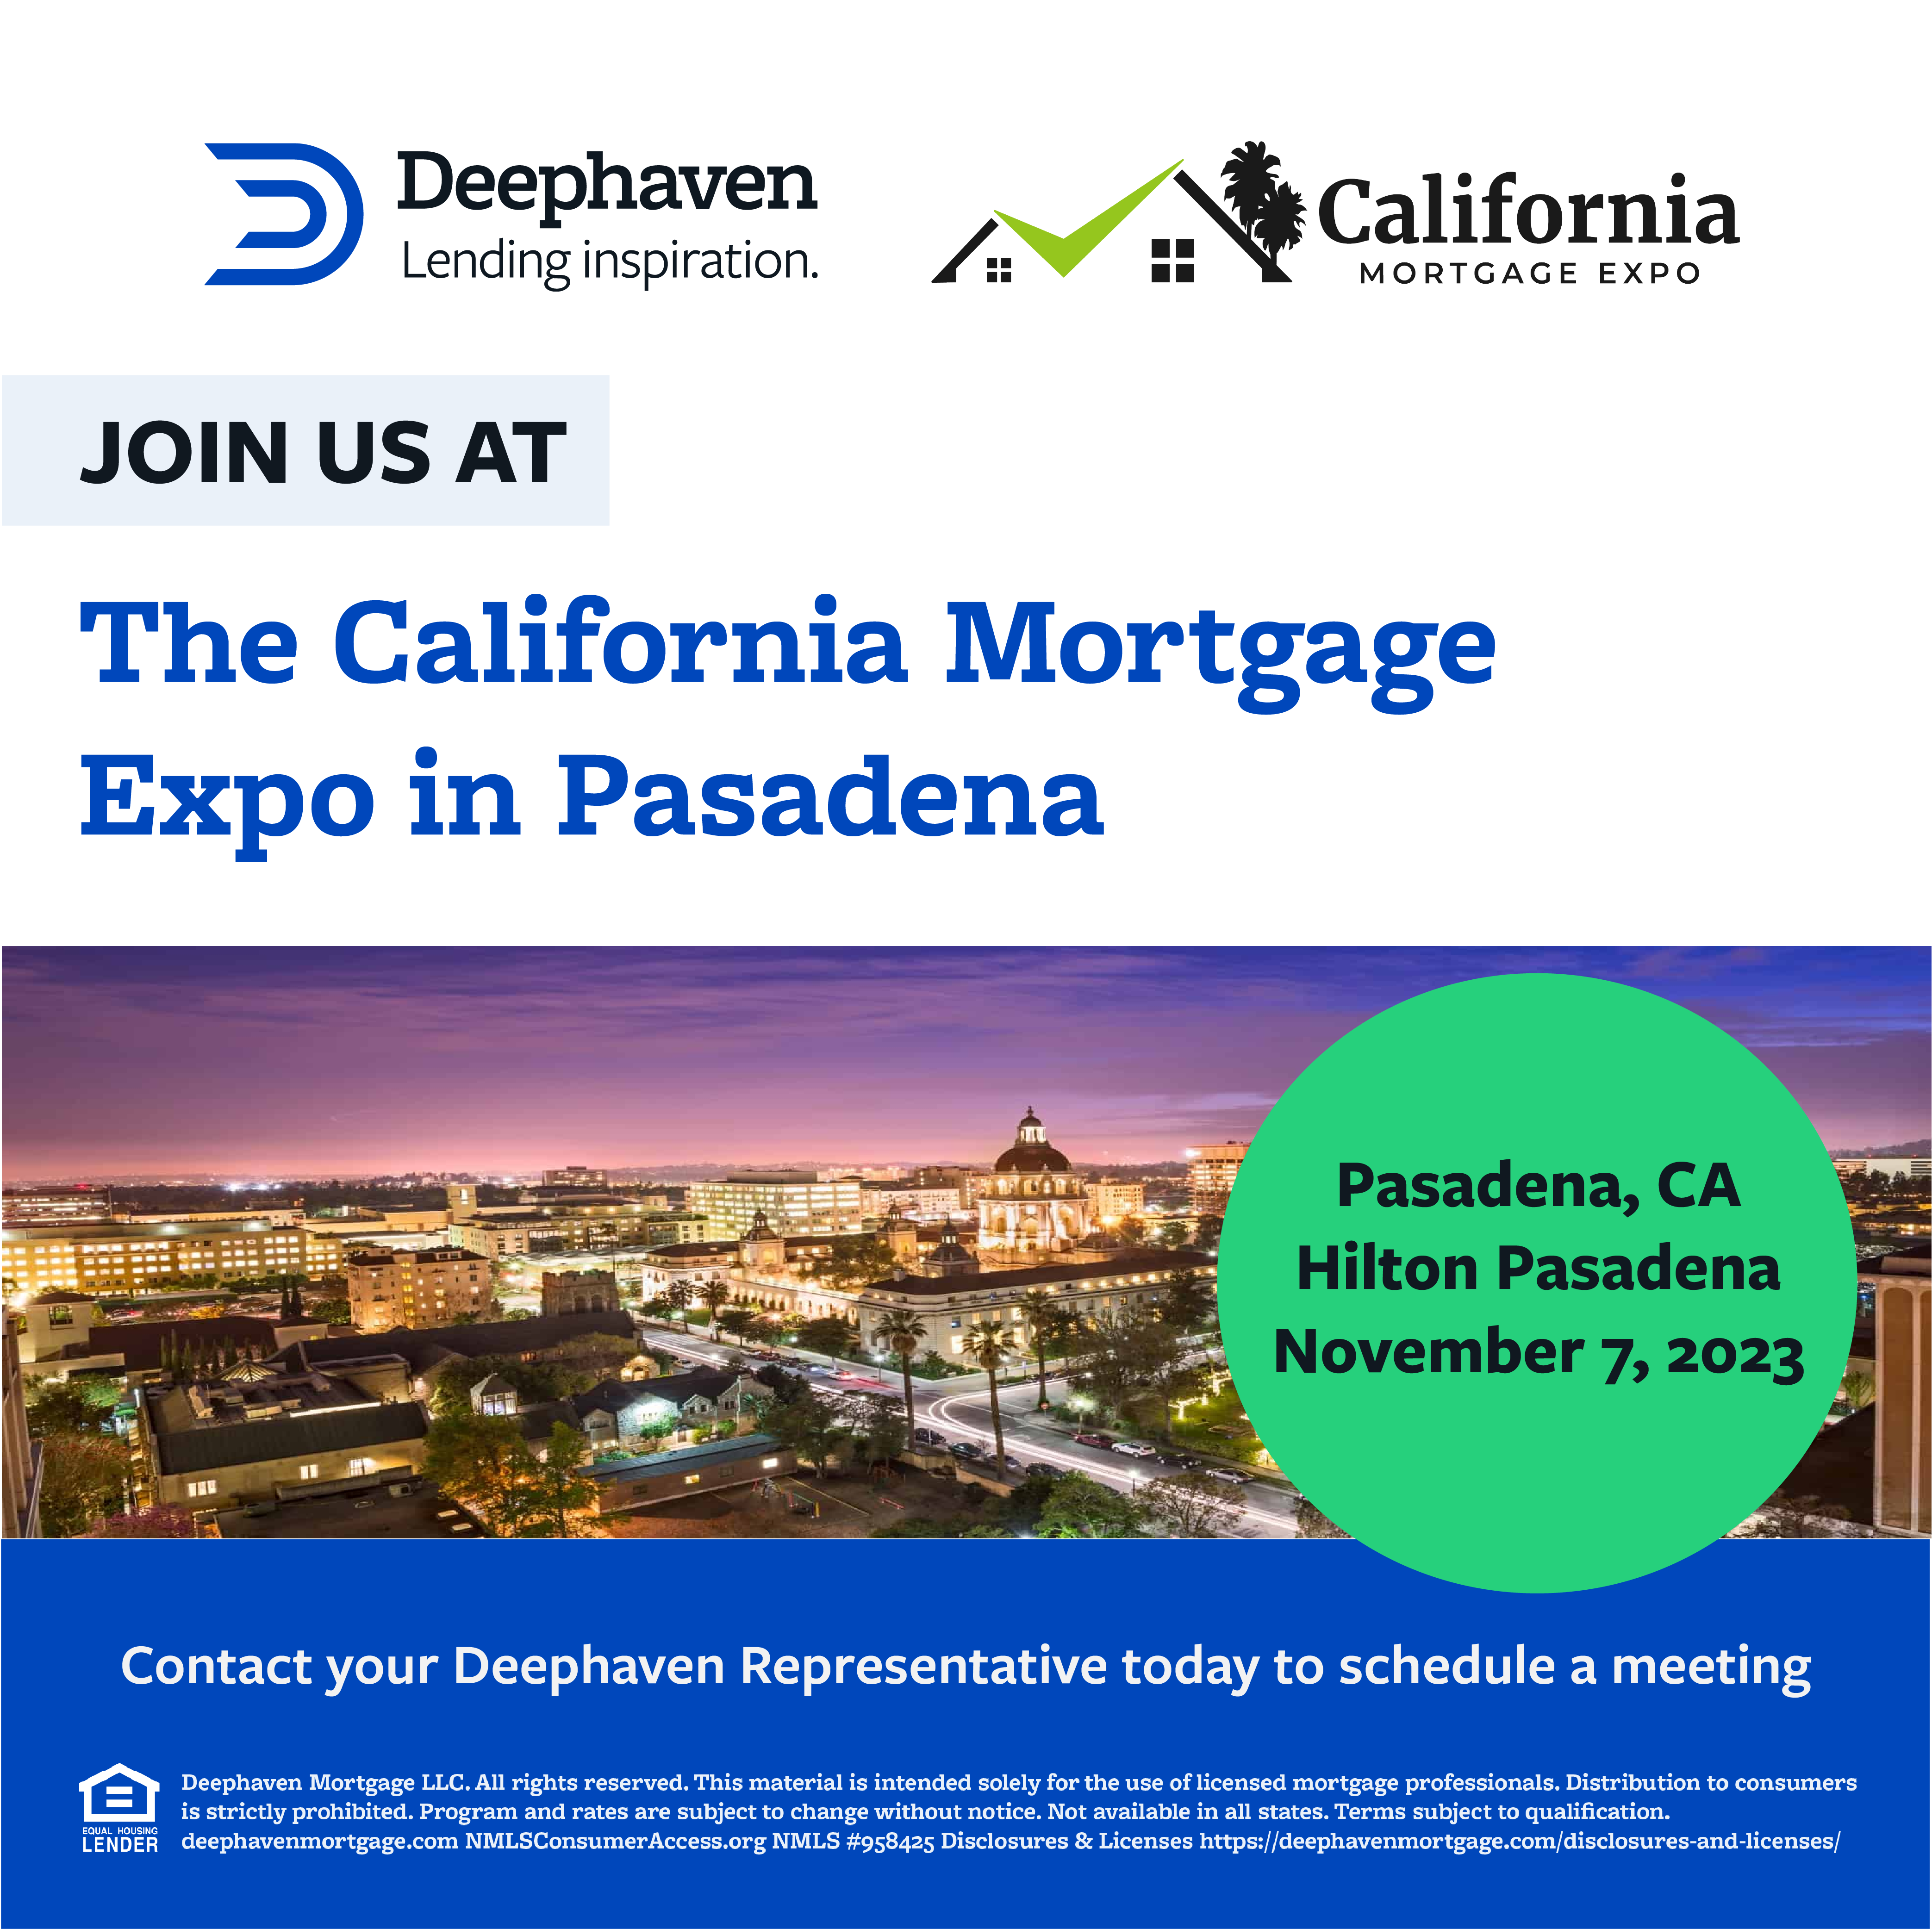 California Mortgage Expo—Pasadena